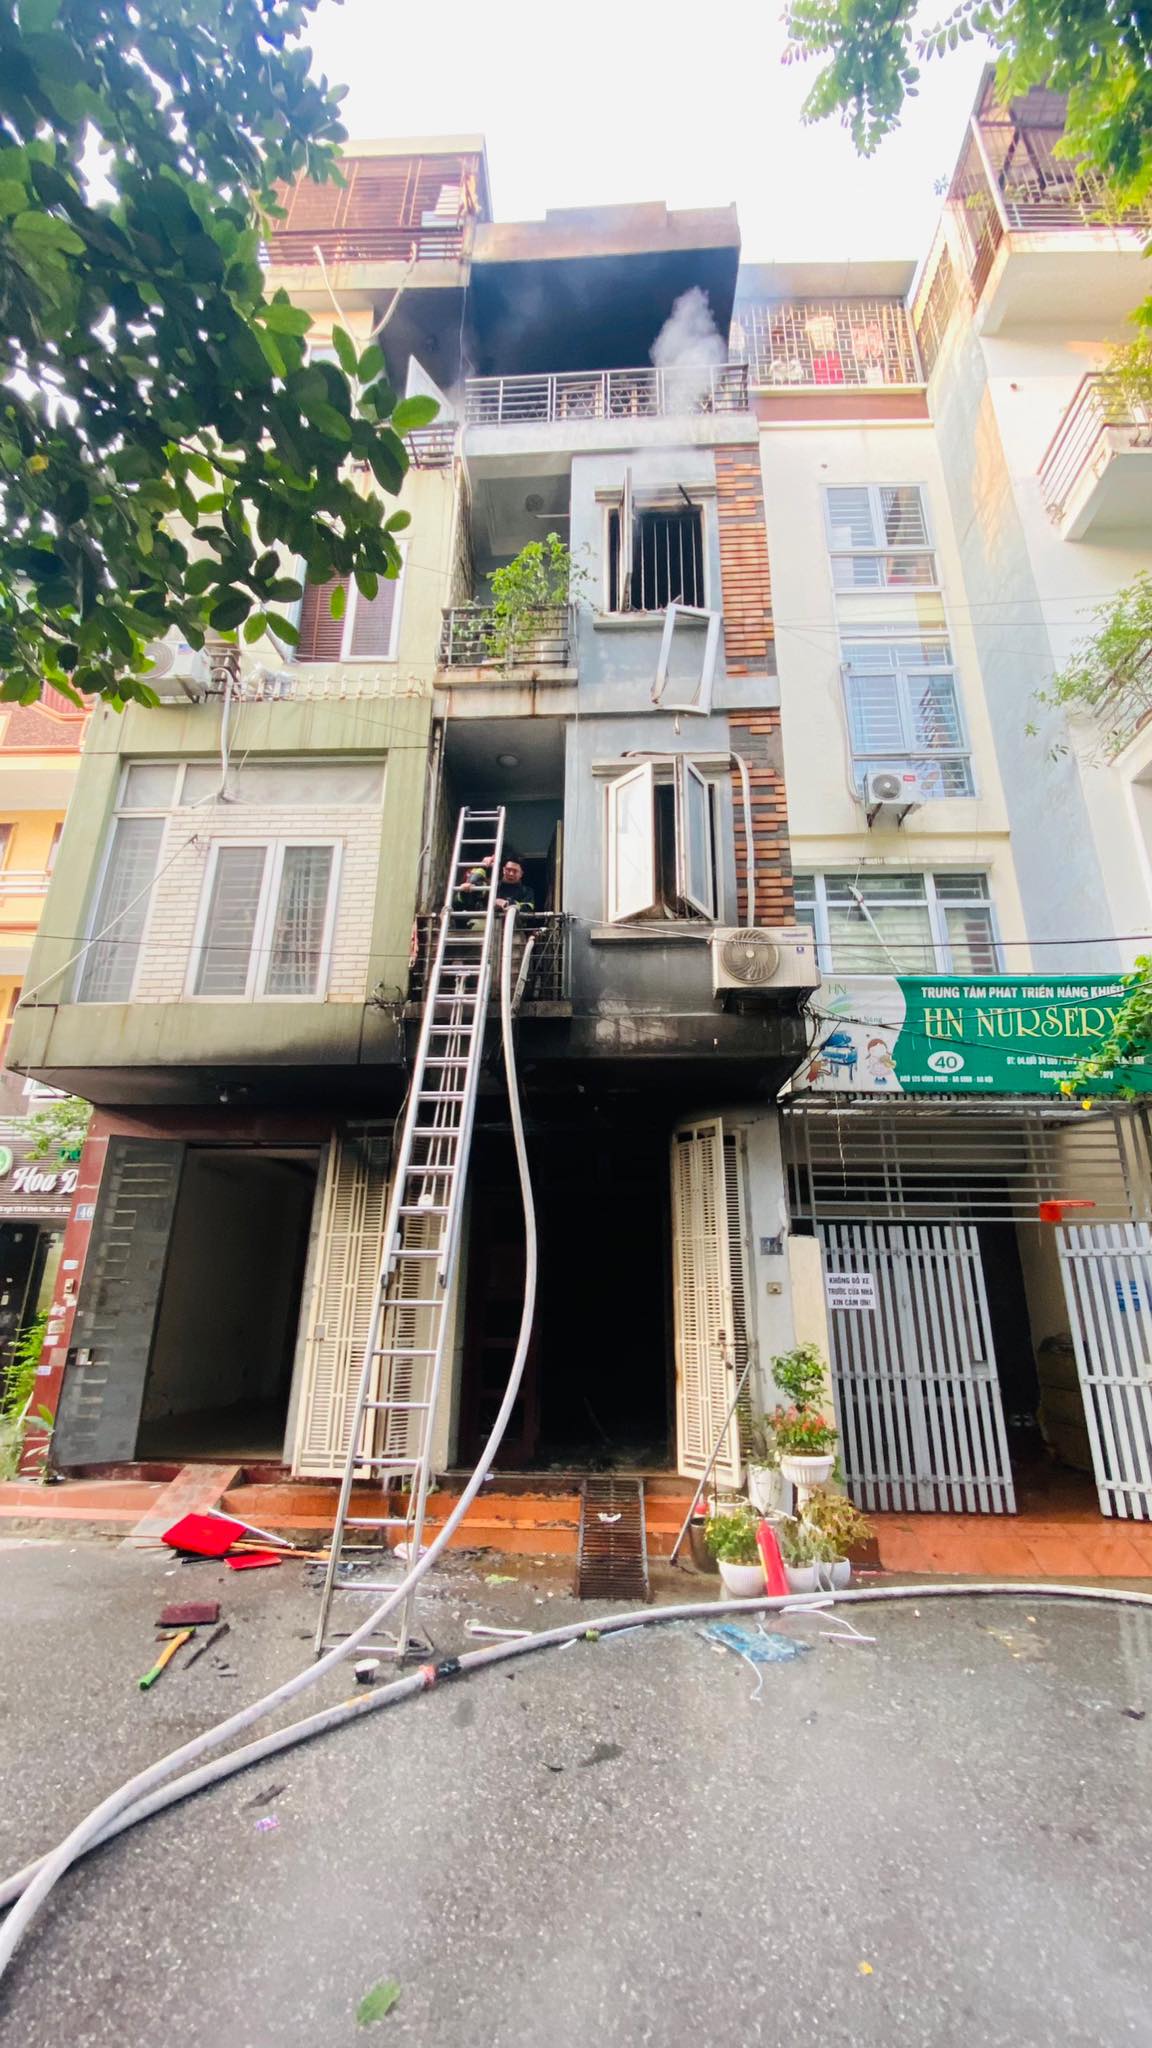 Cháy nhà 3 tầng ở Hà Nội, người đàn ông nhanh trí đưa vợ và 2 con leo ban công thoát thân - 3